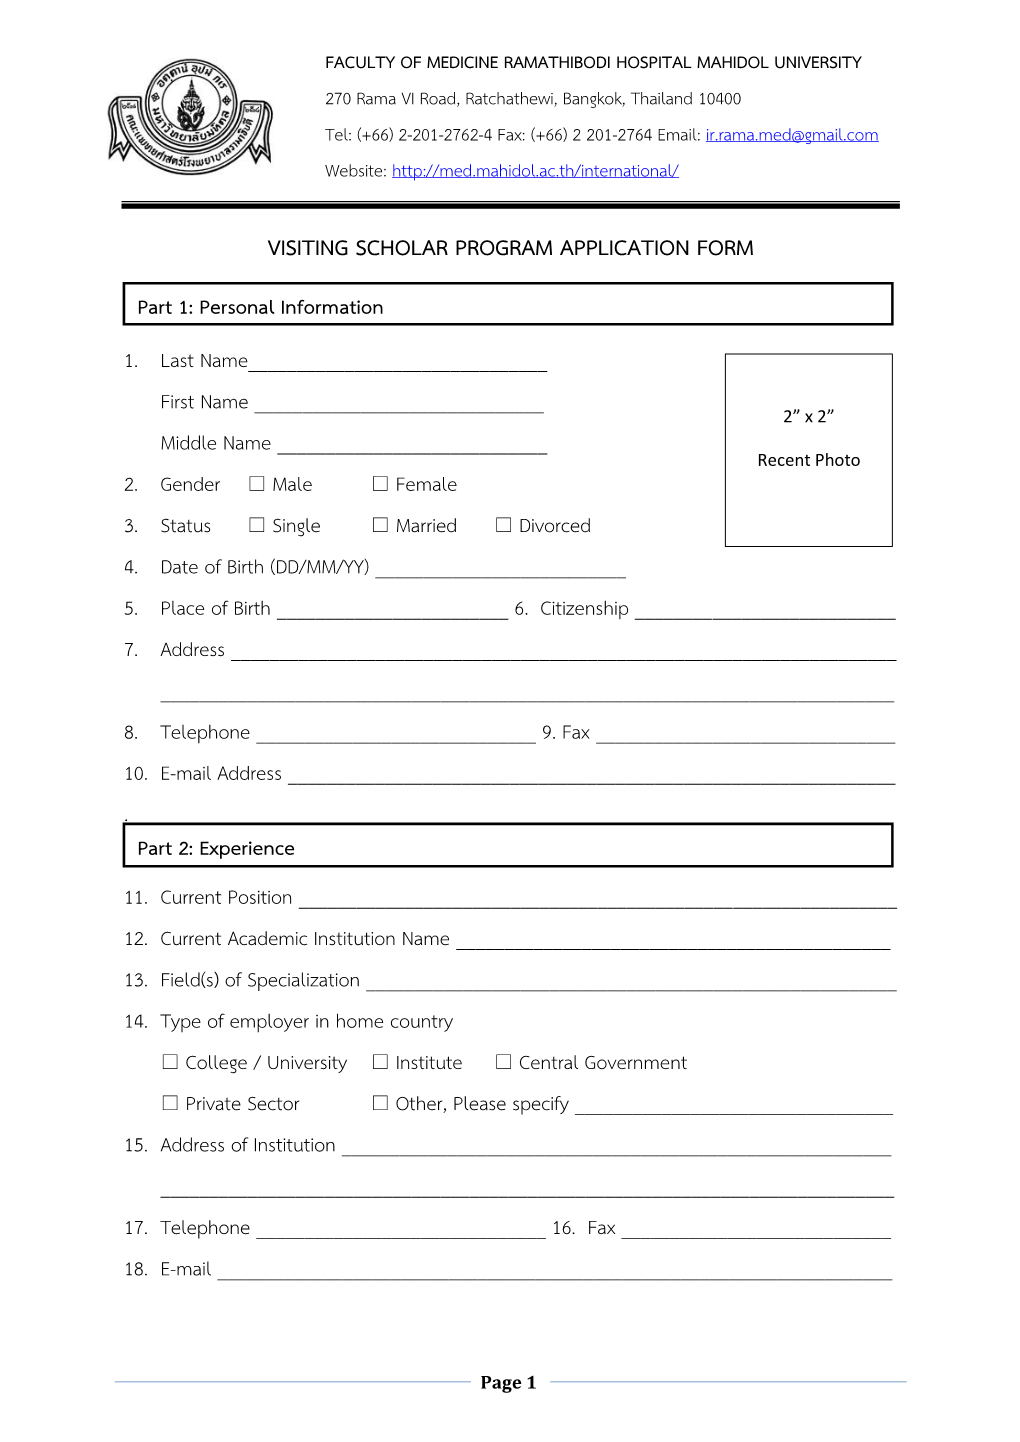 Visiting Scholar Program Application Form